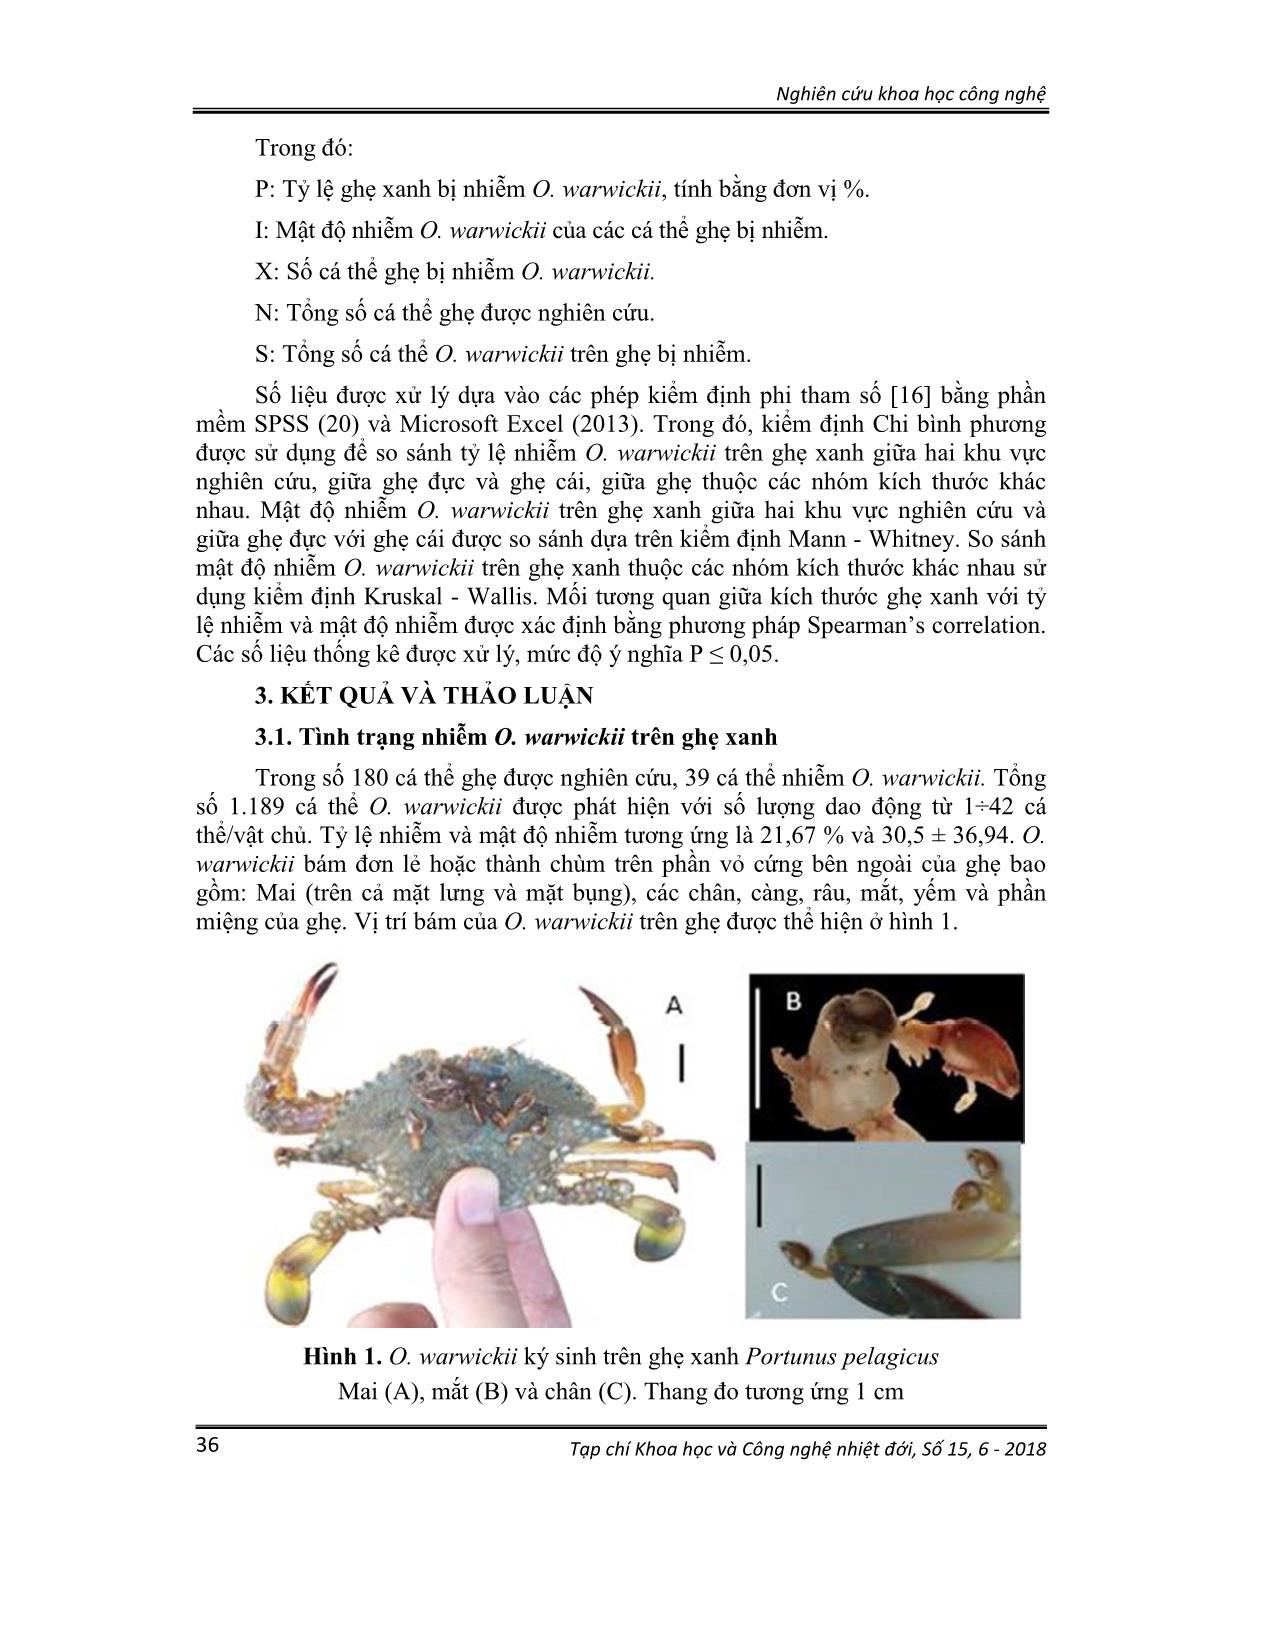 Khảo sát tình trạng nhiễm giáp xác chân tơ octolasmis warwickii ngoại ký sinh trên ghẹ xanh portunus pelagicus ở vùng biển Khánh hòa và Phú Yên trang 3